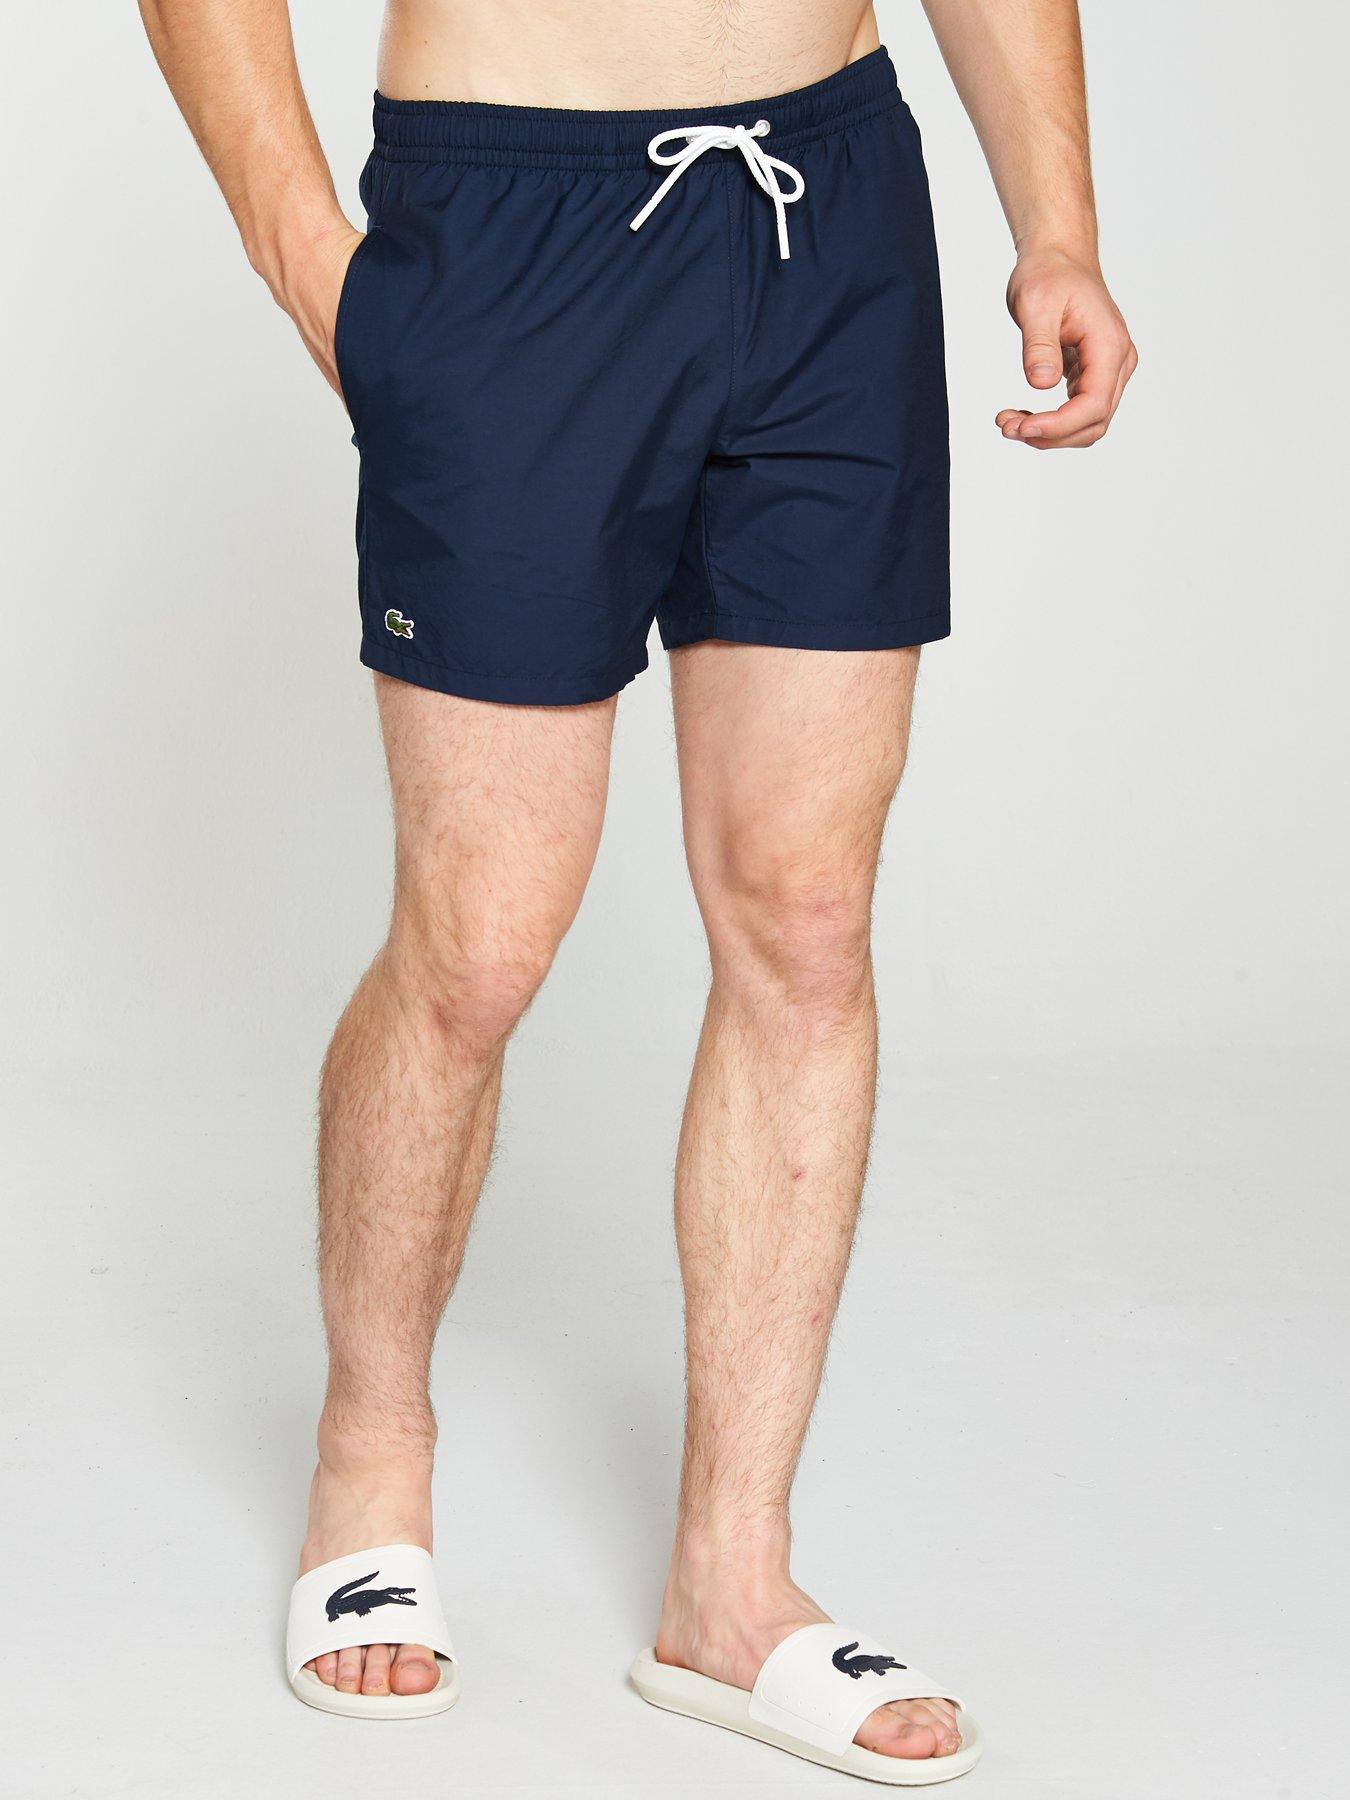 lacoste swim shorts uk